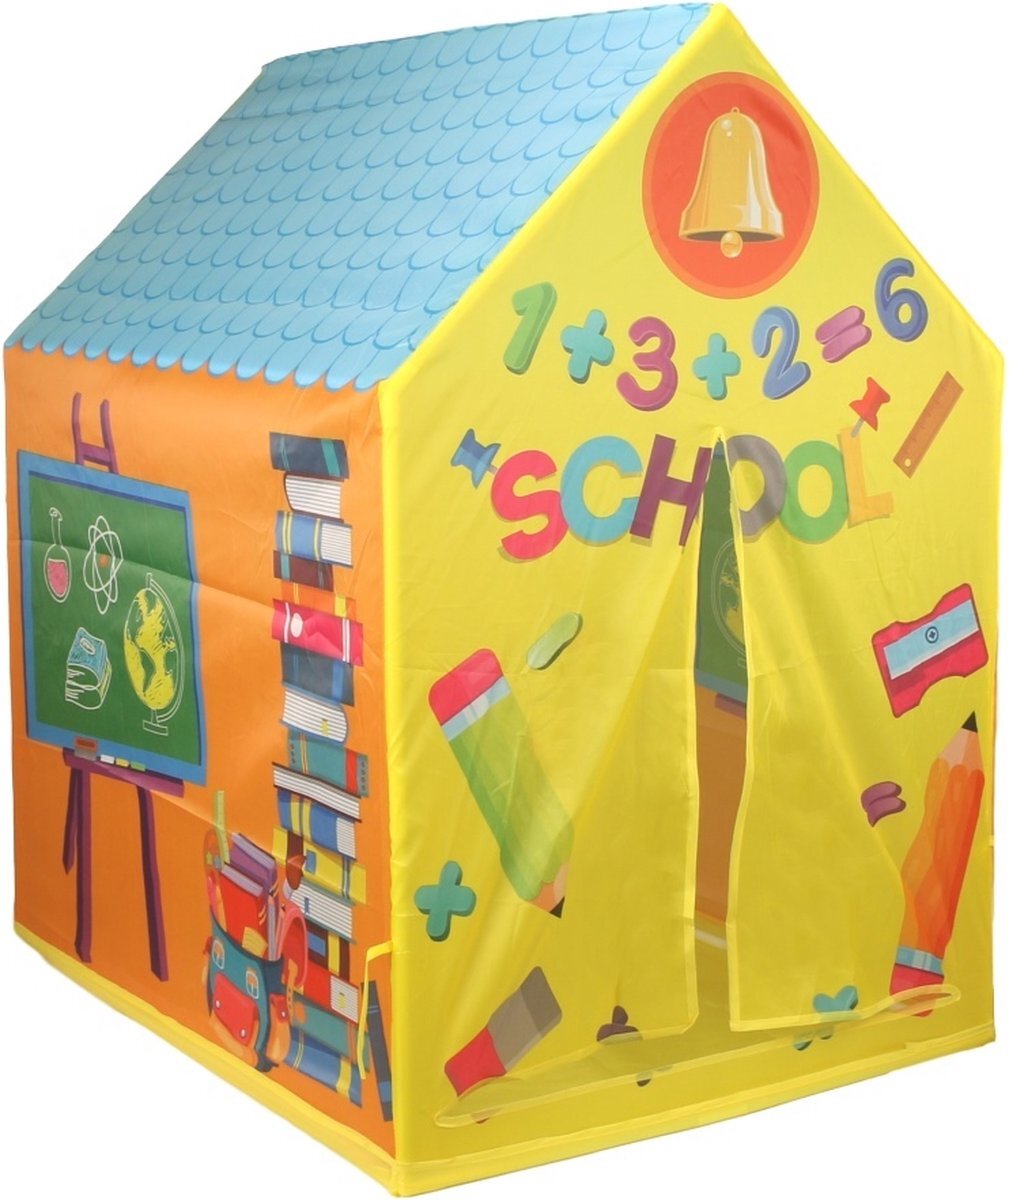 Eco Toys Eco Toys School Speeltent HC396685